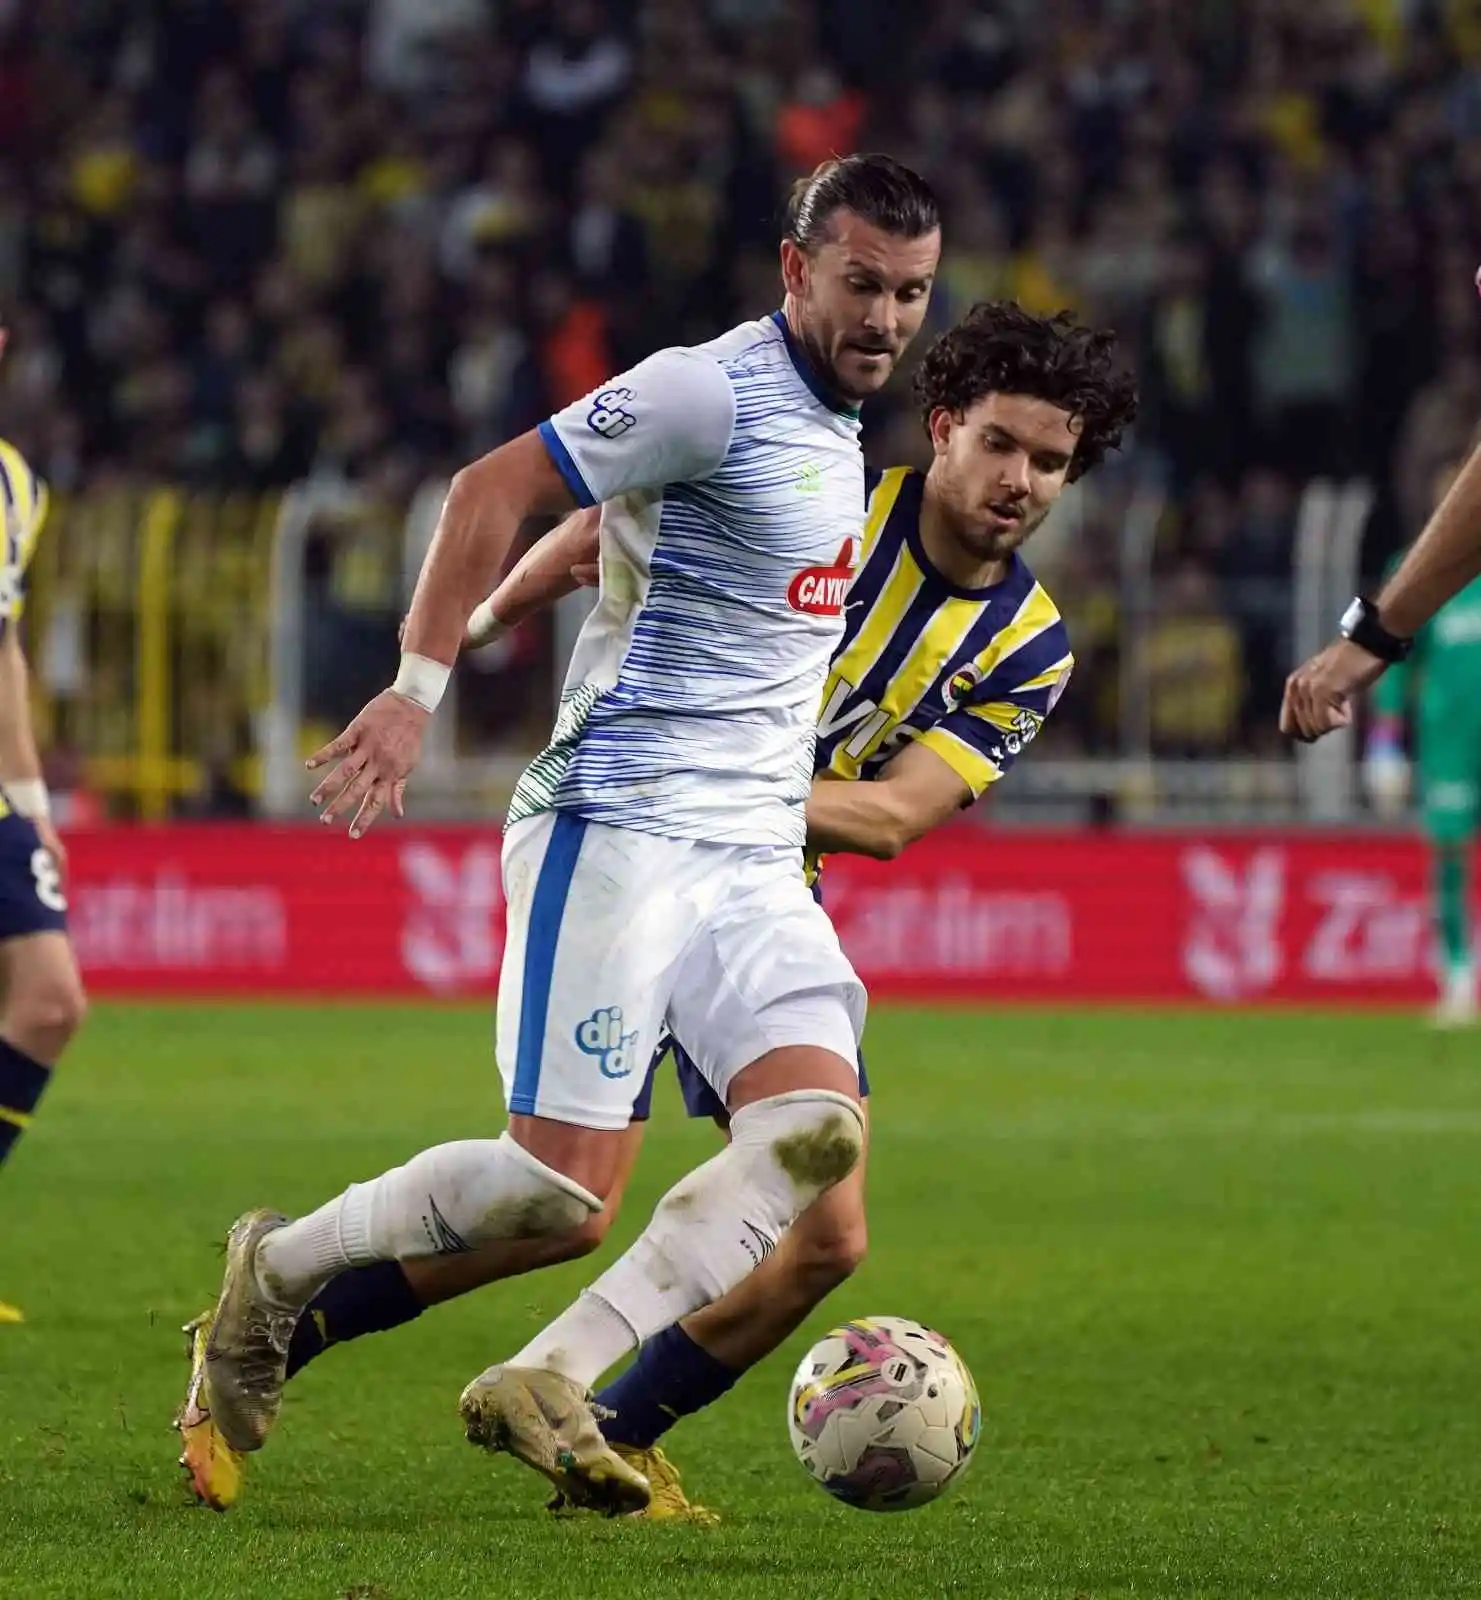 Ziraat Türkiye Kupası: Fenerbahçe: 2 - Çaykur Rizespor: 1 (Maç sonucu)
